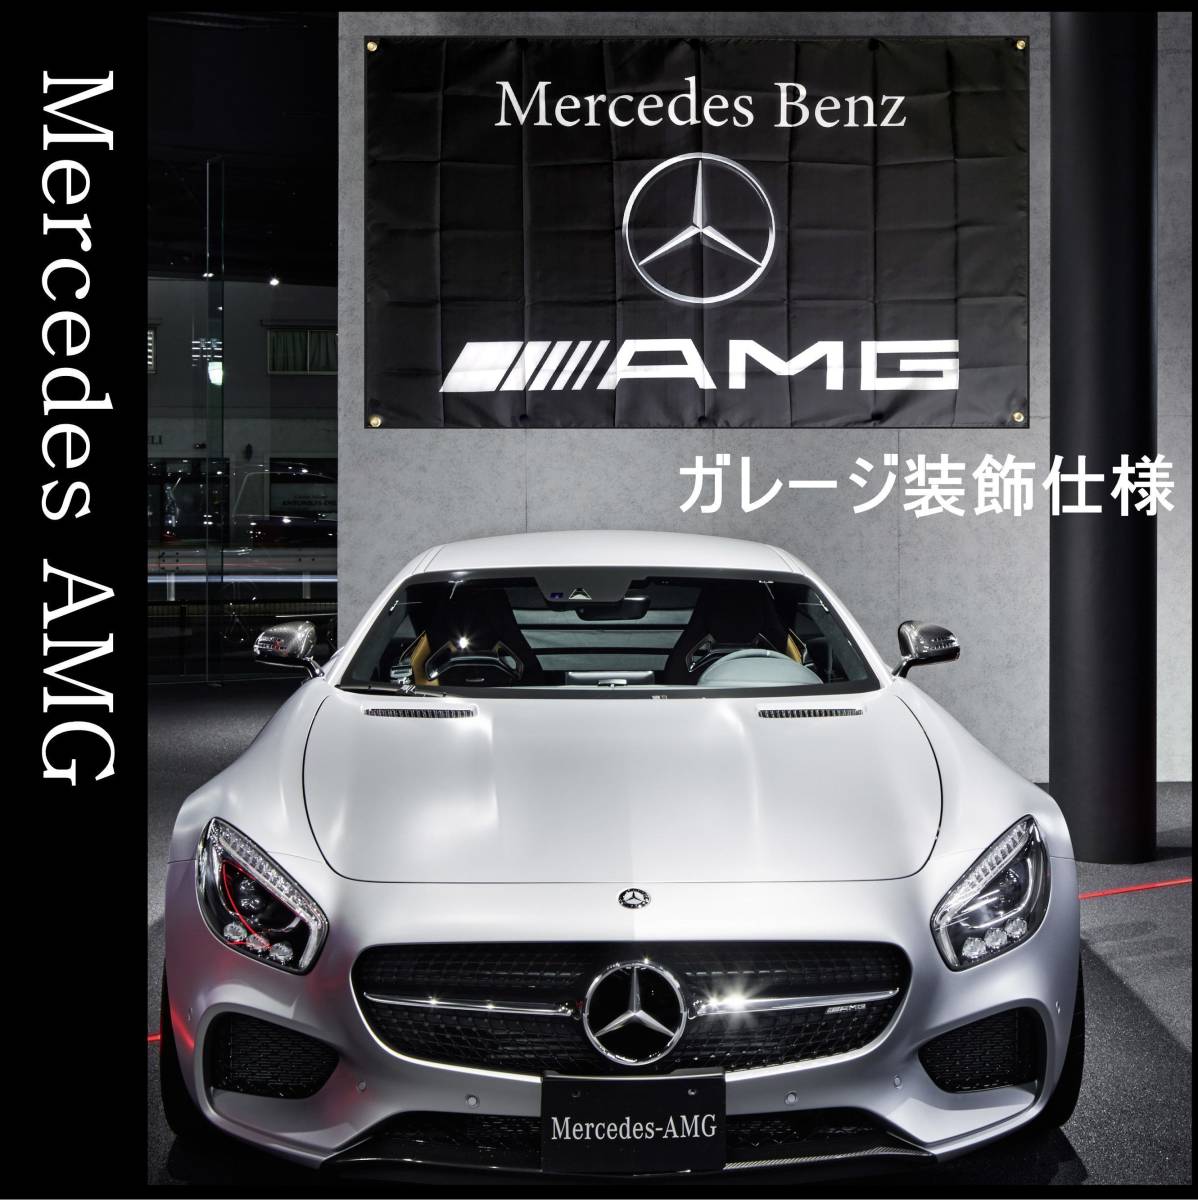 ★ガレージ装飾仕様★ 3Dエンブレム G05 ベンツ旗 ガレージ雑貨 メルセデス Mercedes Benz ベンツフラッグ AMG メルセデスベンツ ポスターの画像1